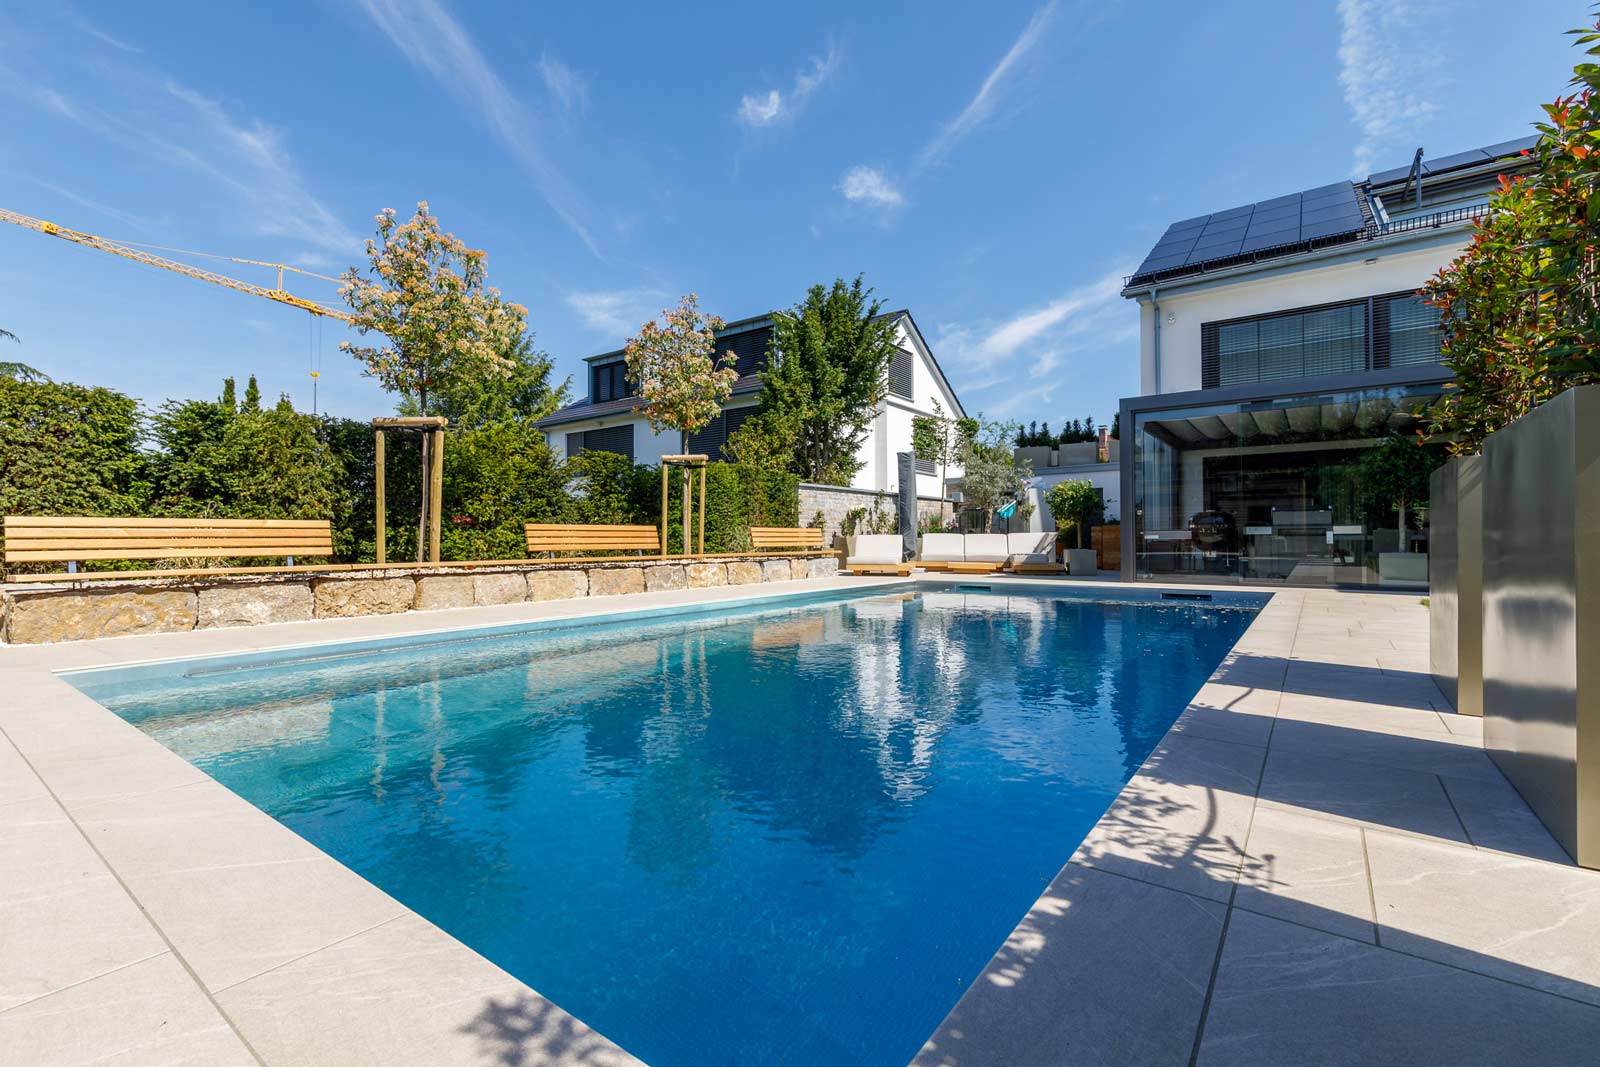 Swimmingpool In Harmonie Mit Haus Und Garten